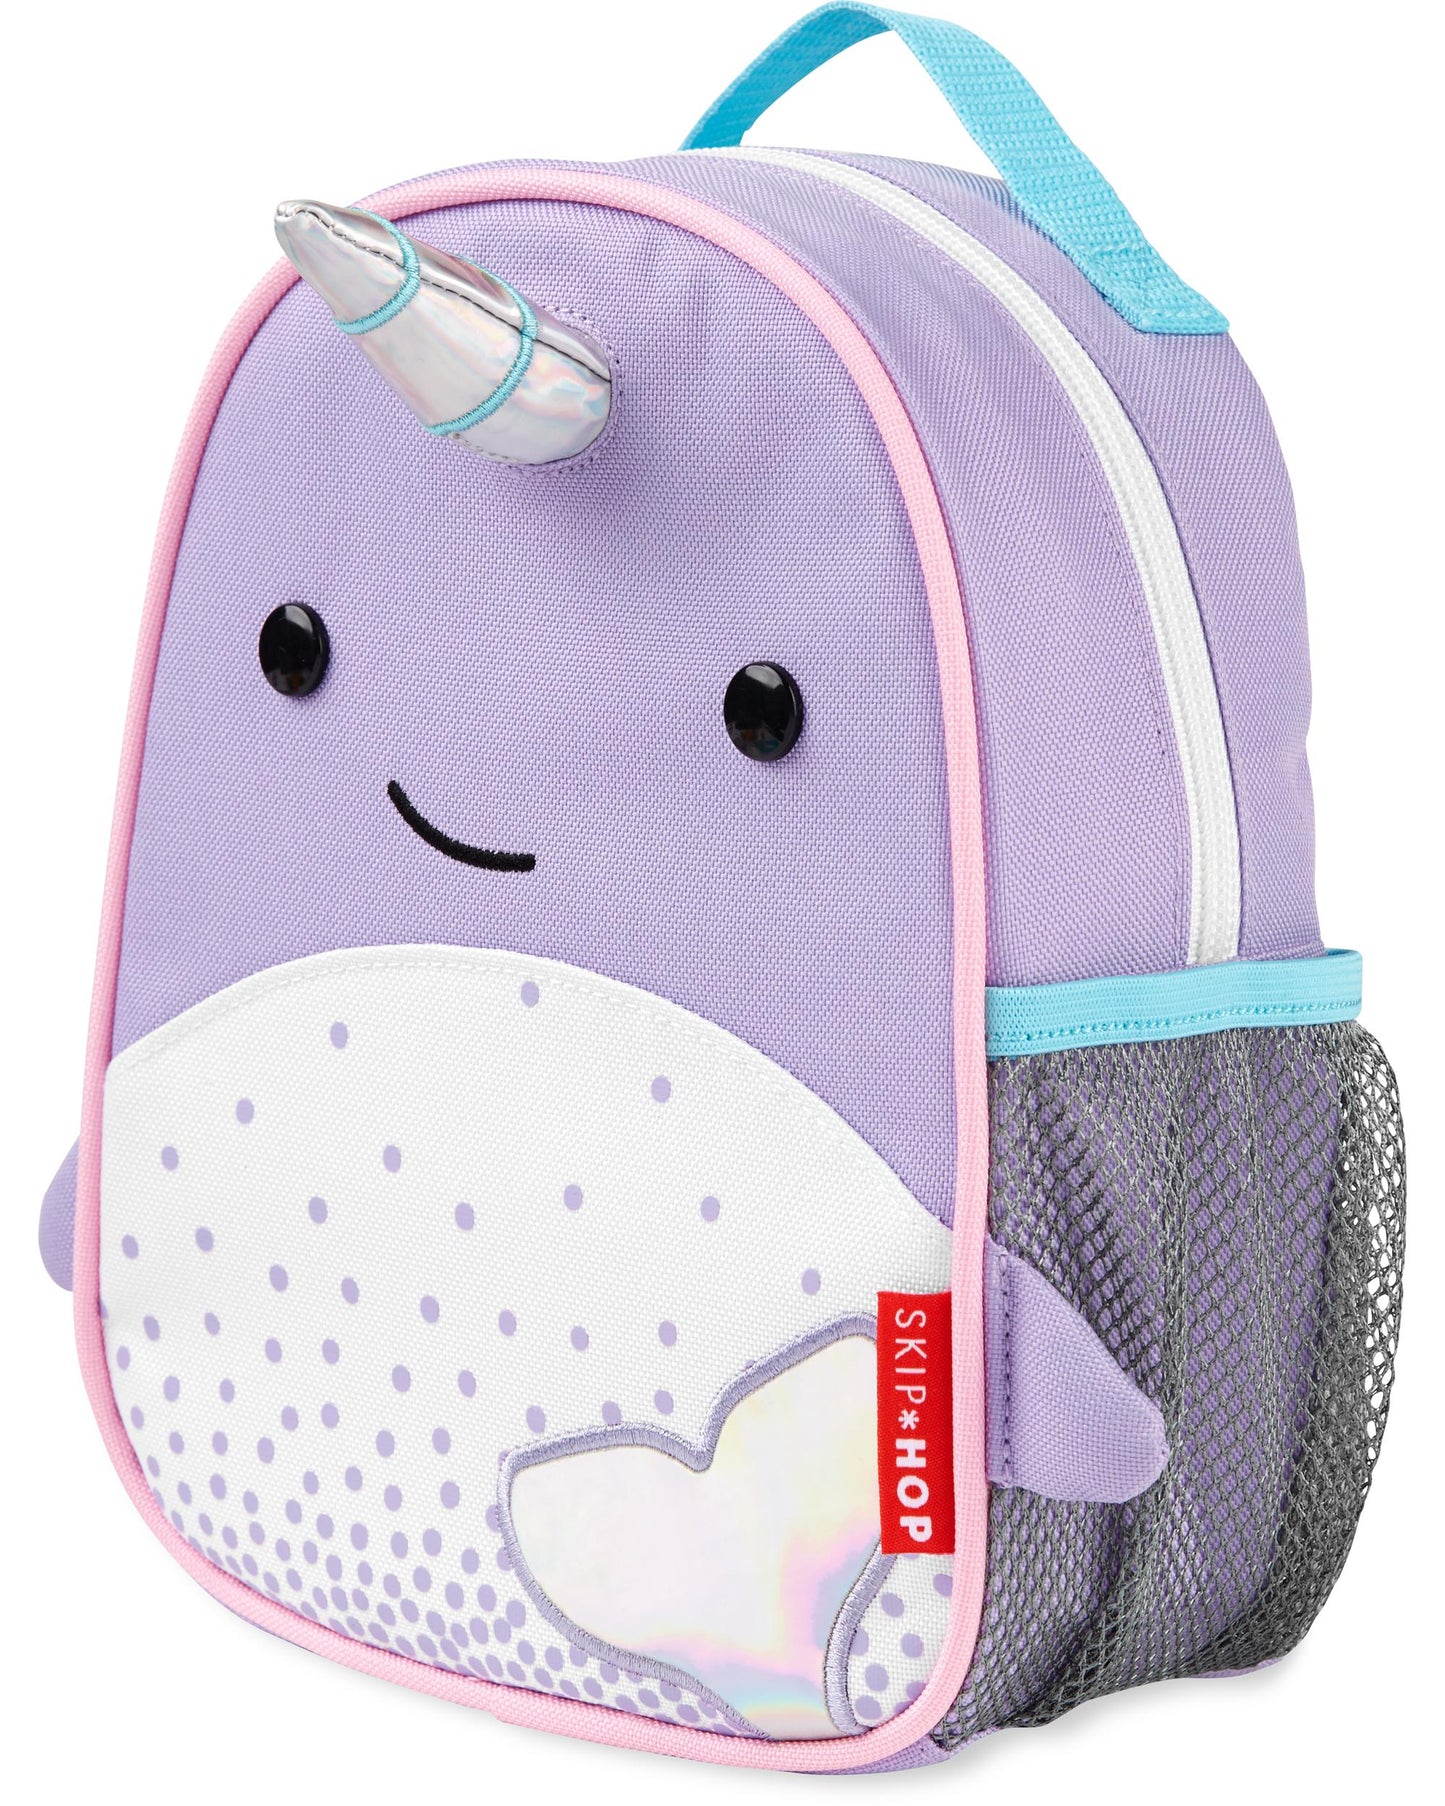 Skip Hop Zoo Mini Backpack with Reins - Narwhal